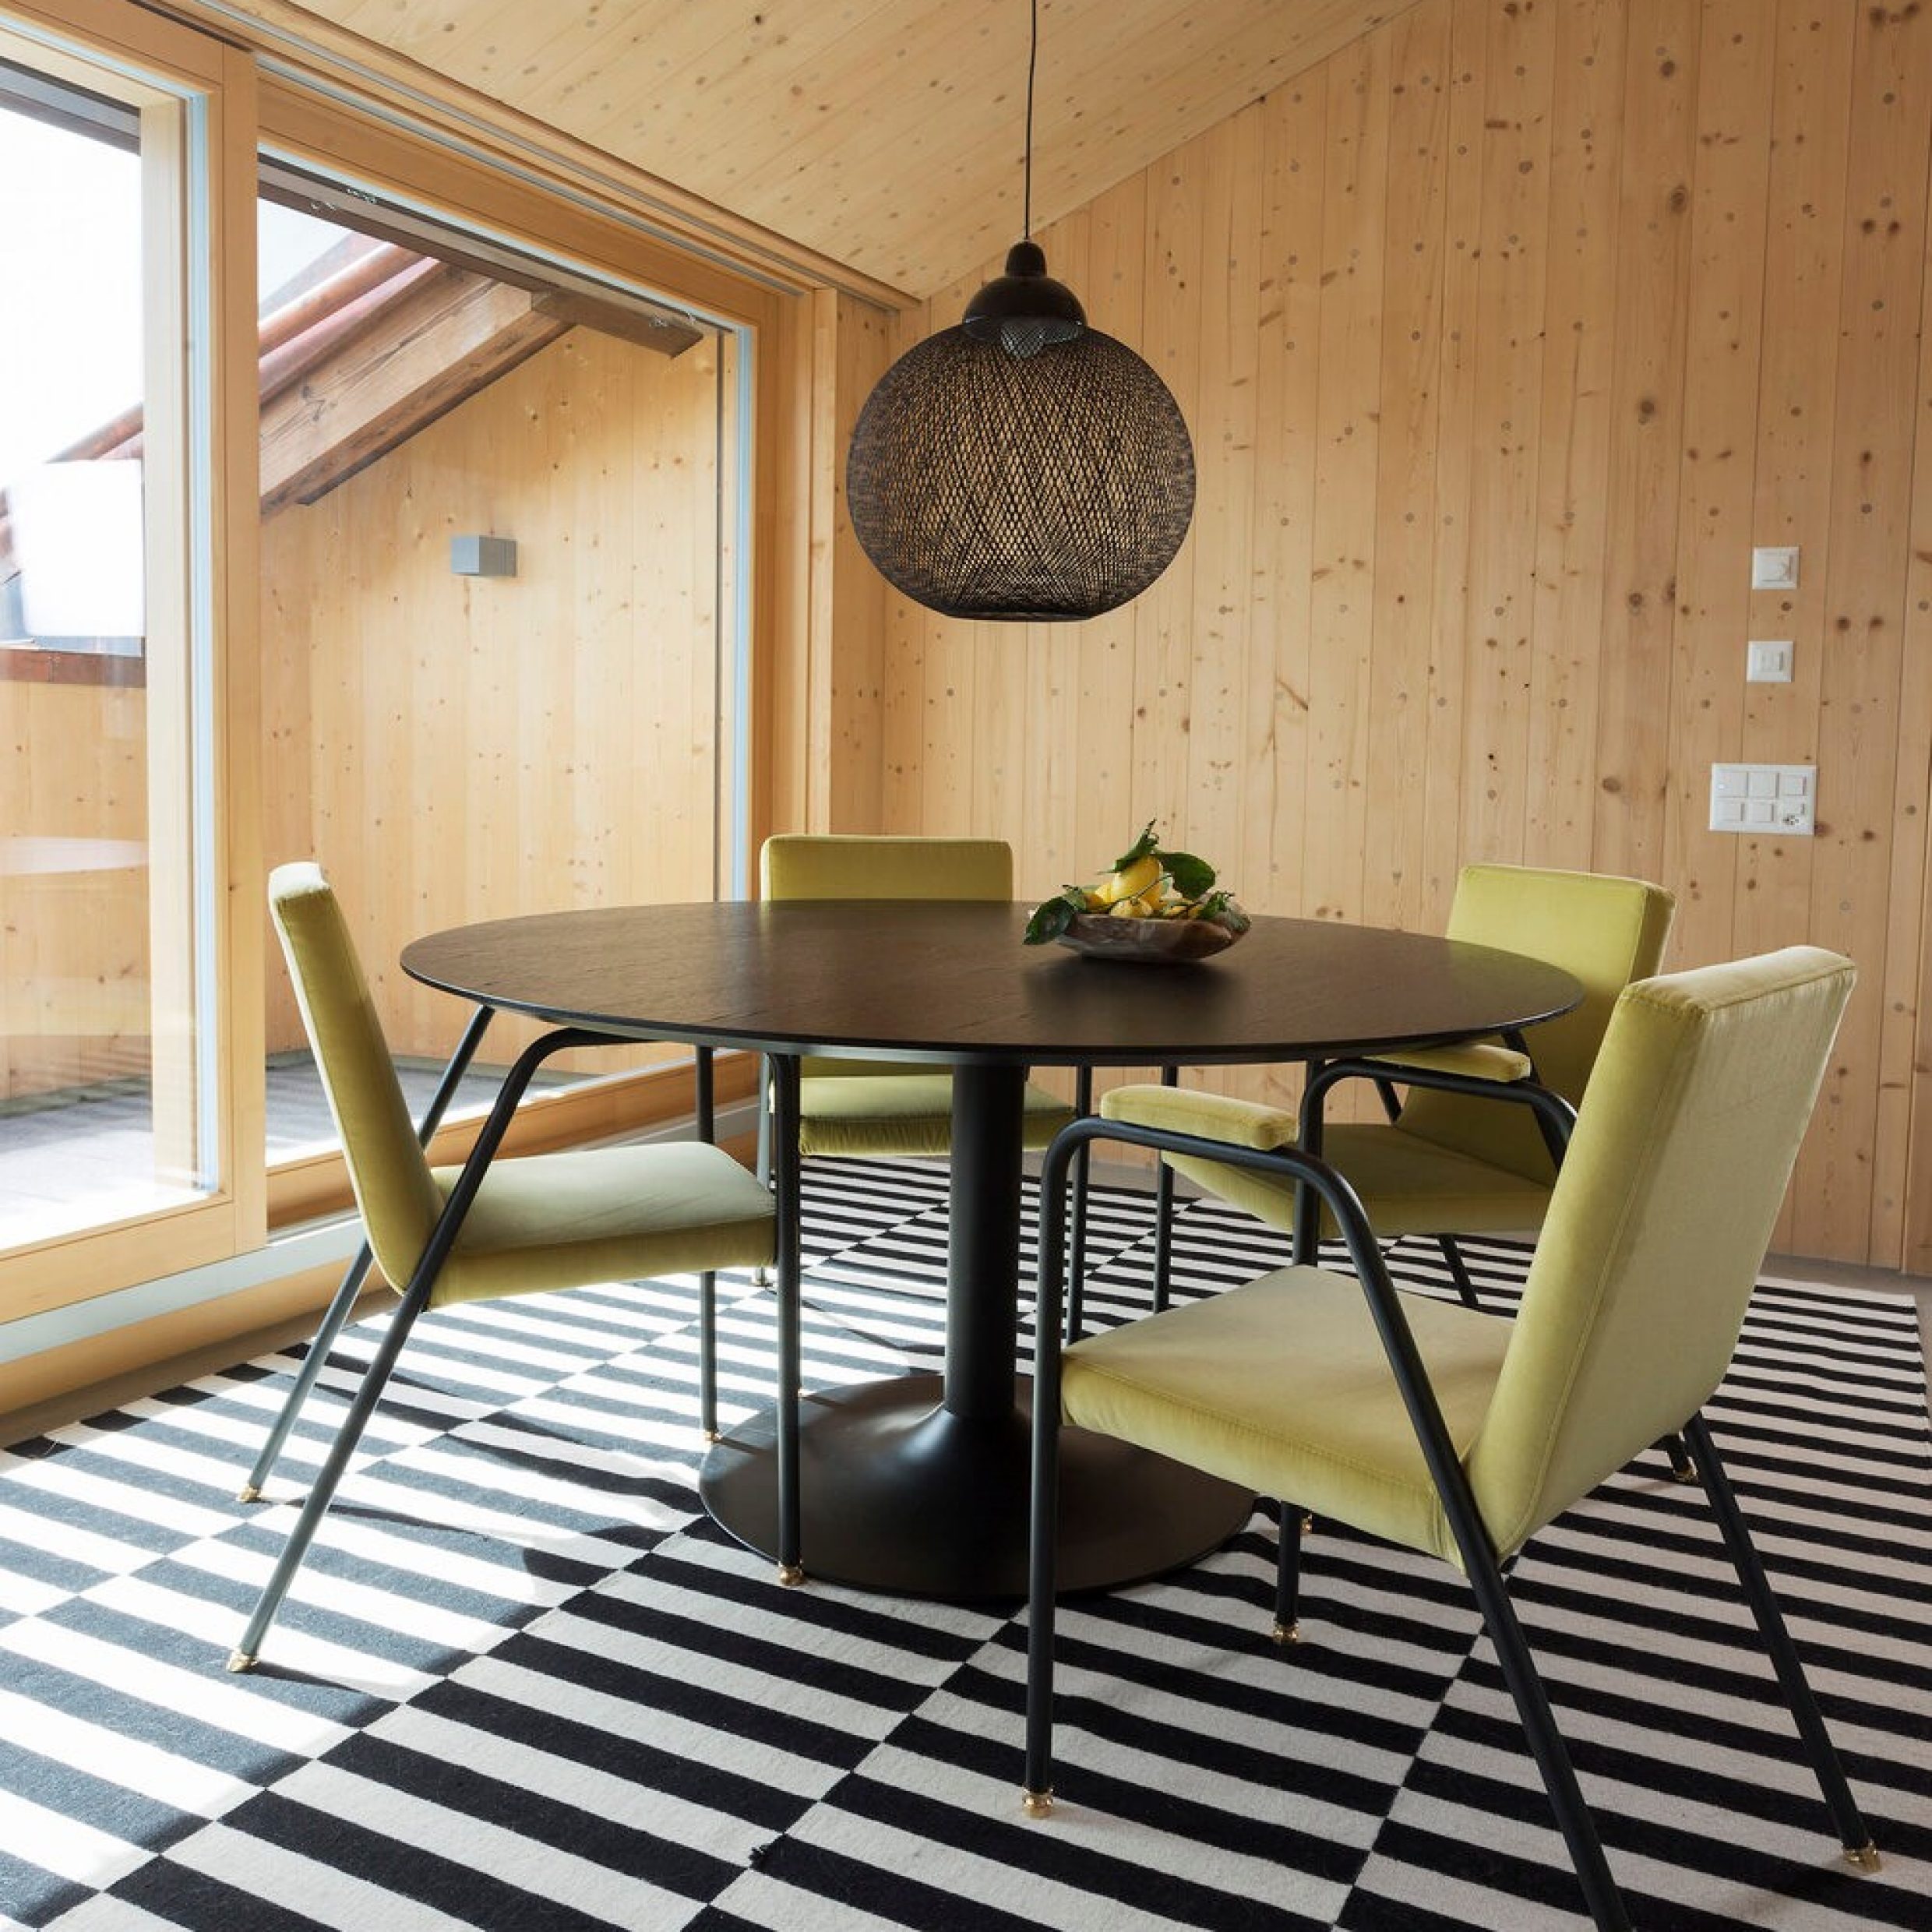 Une salle à manger avec une table ronde et quatre chaises posées sur un tapis rayé en noir et blanc.